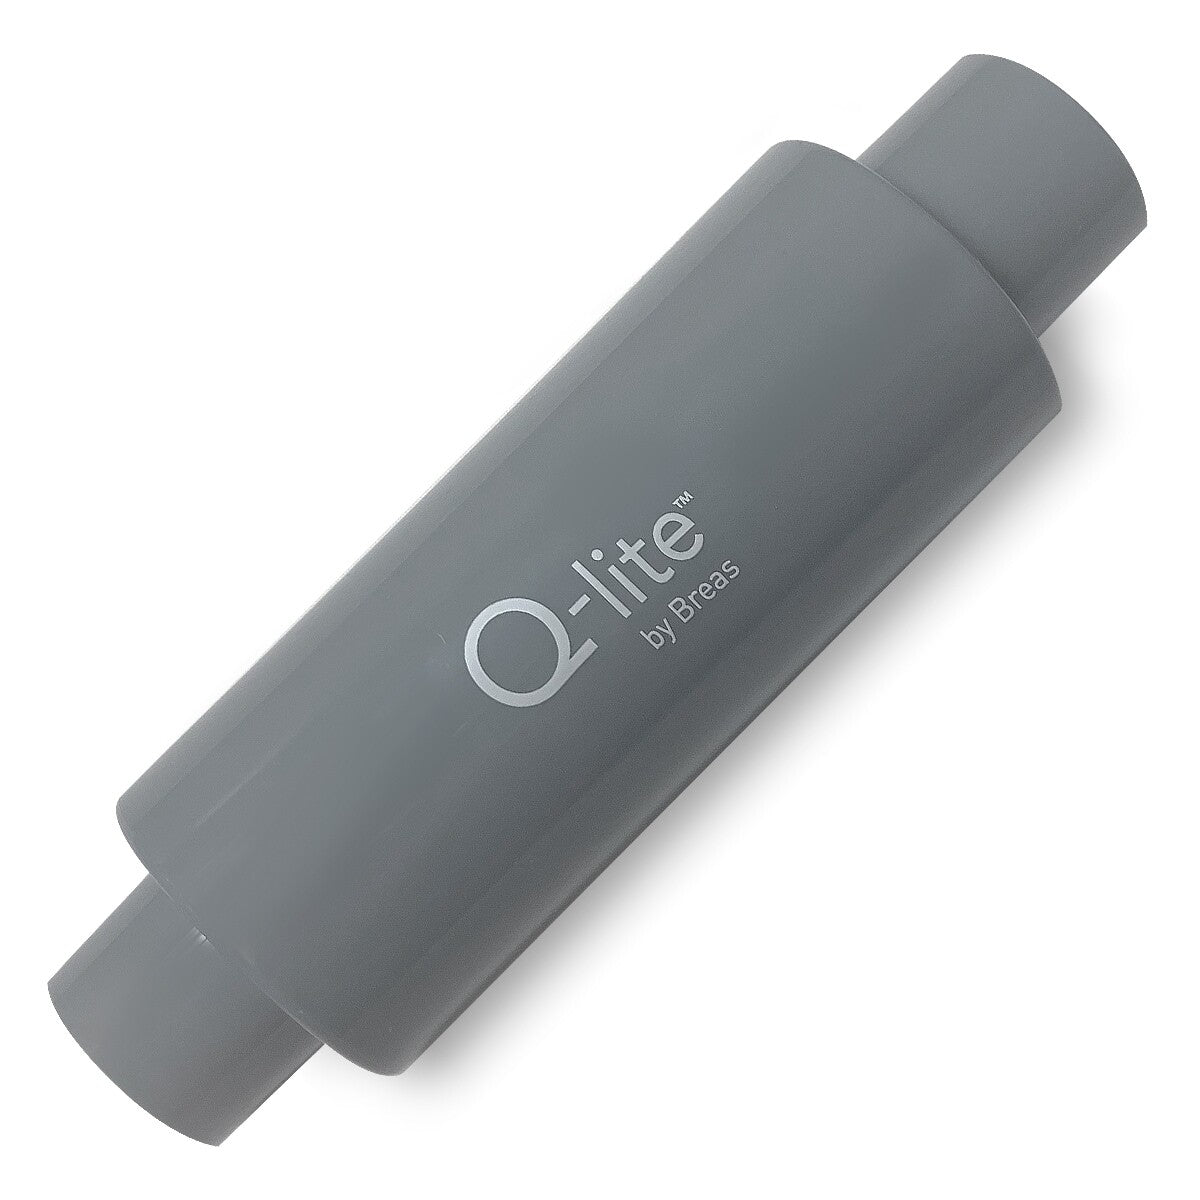 Q-Lite In-Line Muffler Kit for CPAP/BiPAP